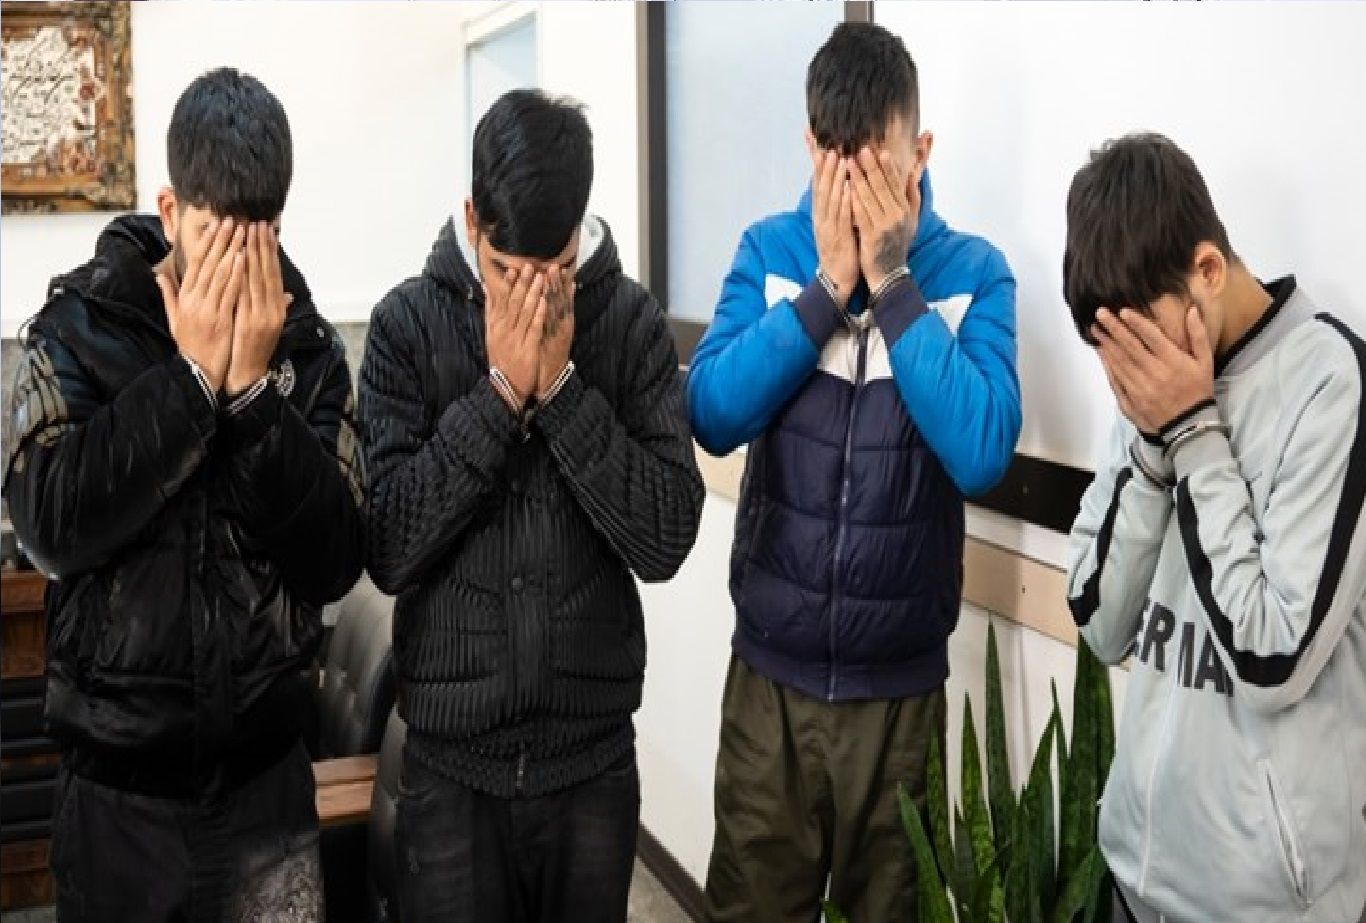 سارقان خشن سر جوان 20 ساله را برای دزدیدن گوشی شکافتند